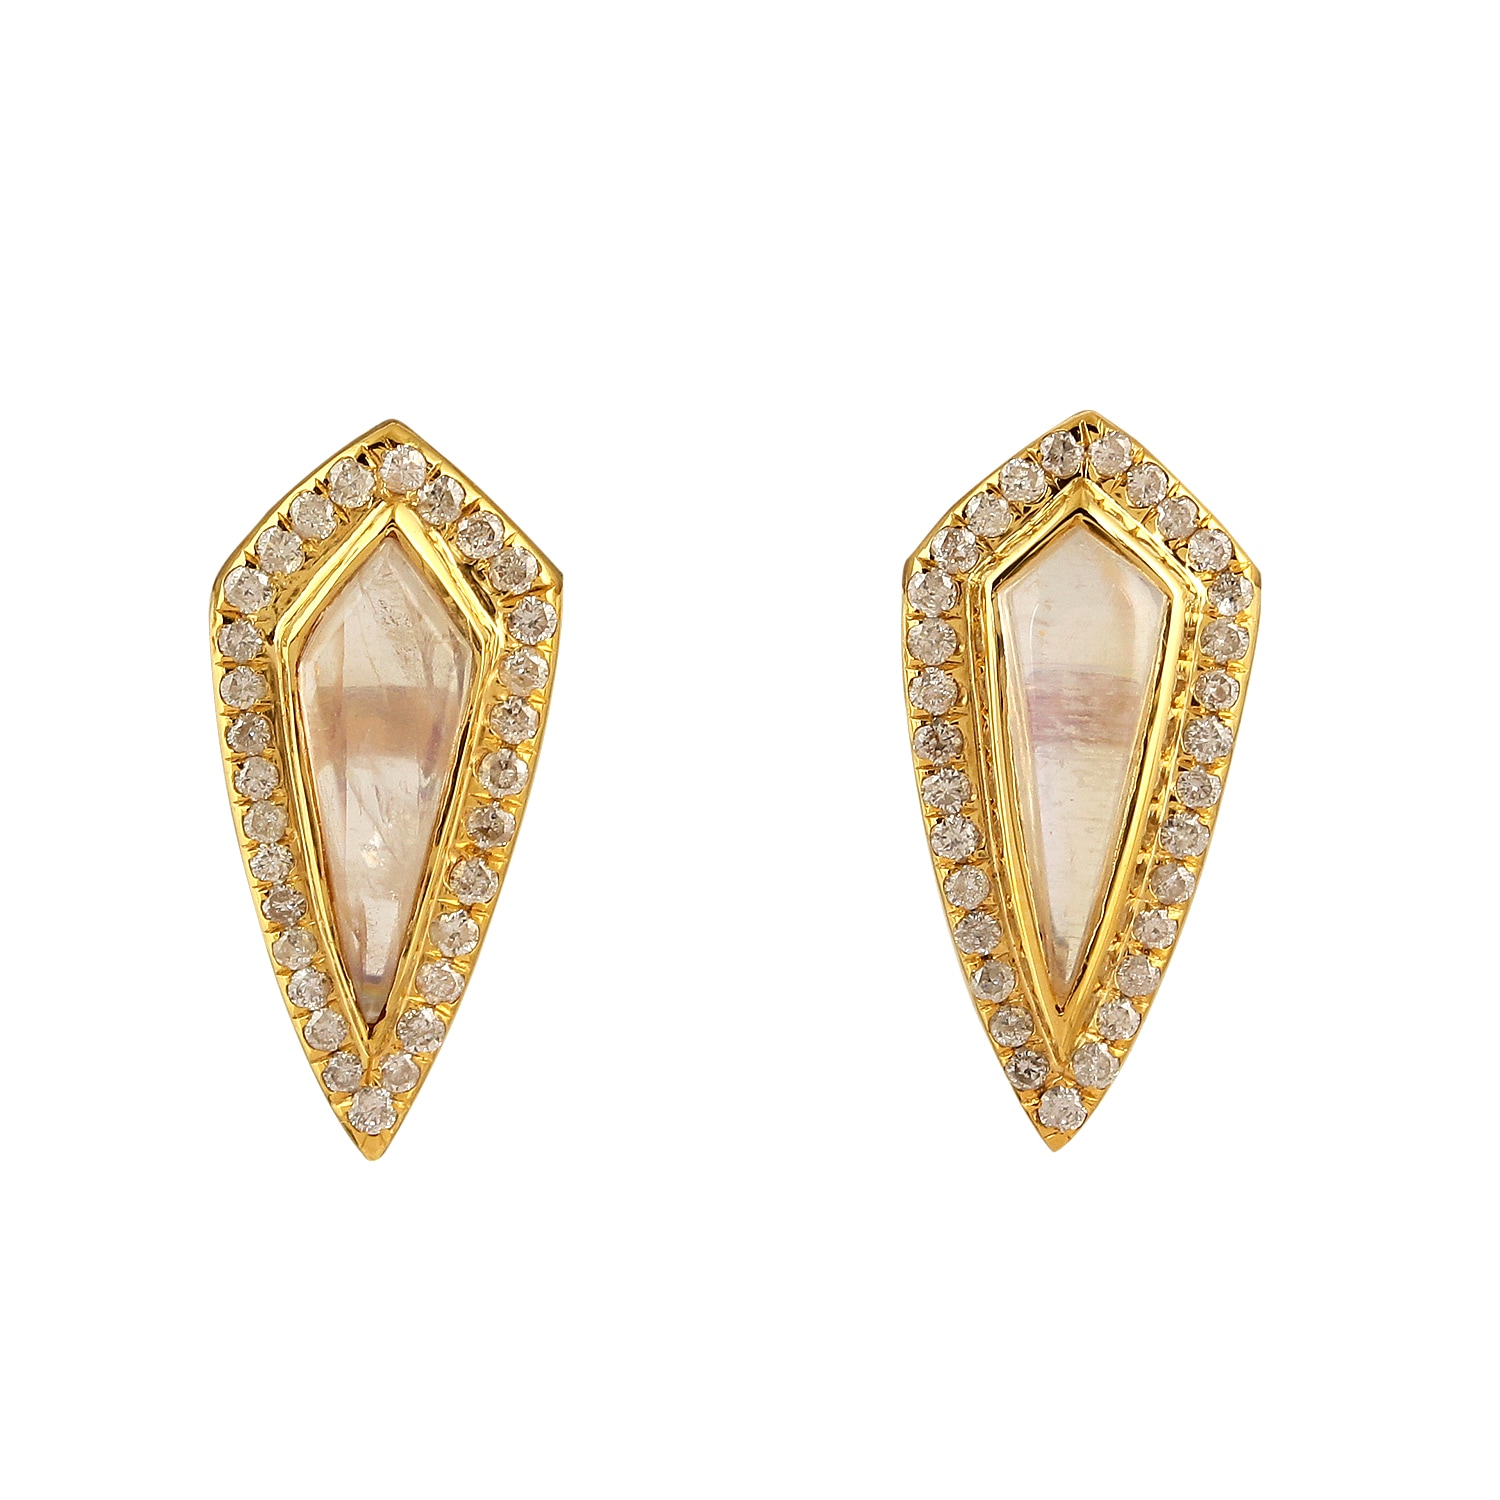 Women’s Gold / White Bezel Set Diamond & Kite Shape Moonstone Gemstone In 18K Yellow Gold Stud Earrings Artisan